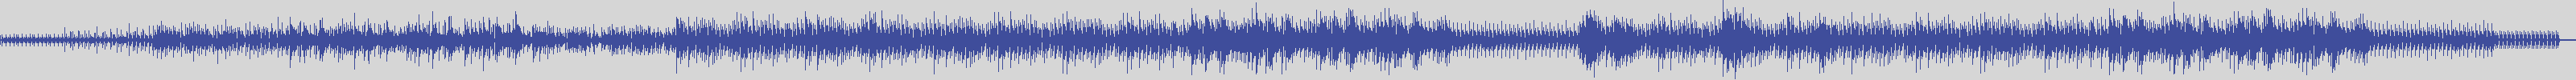 noclouds_chillout [NOC129] Sunrise Santorini - Deno [Sax Beach Mix] audio wave form